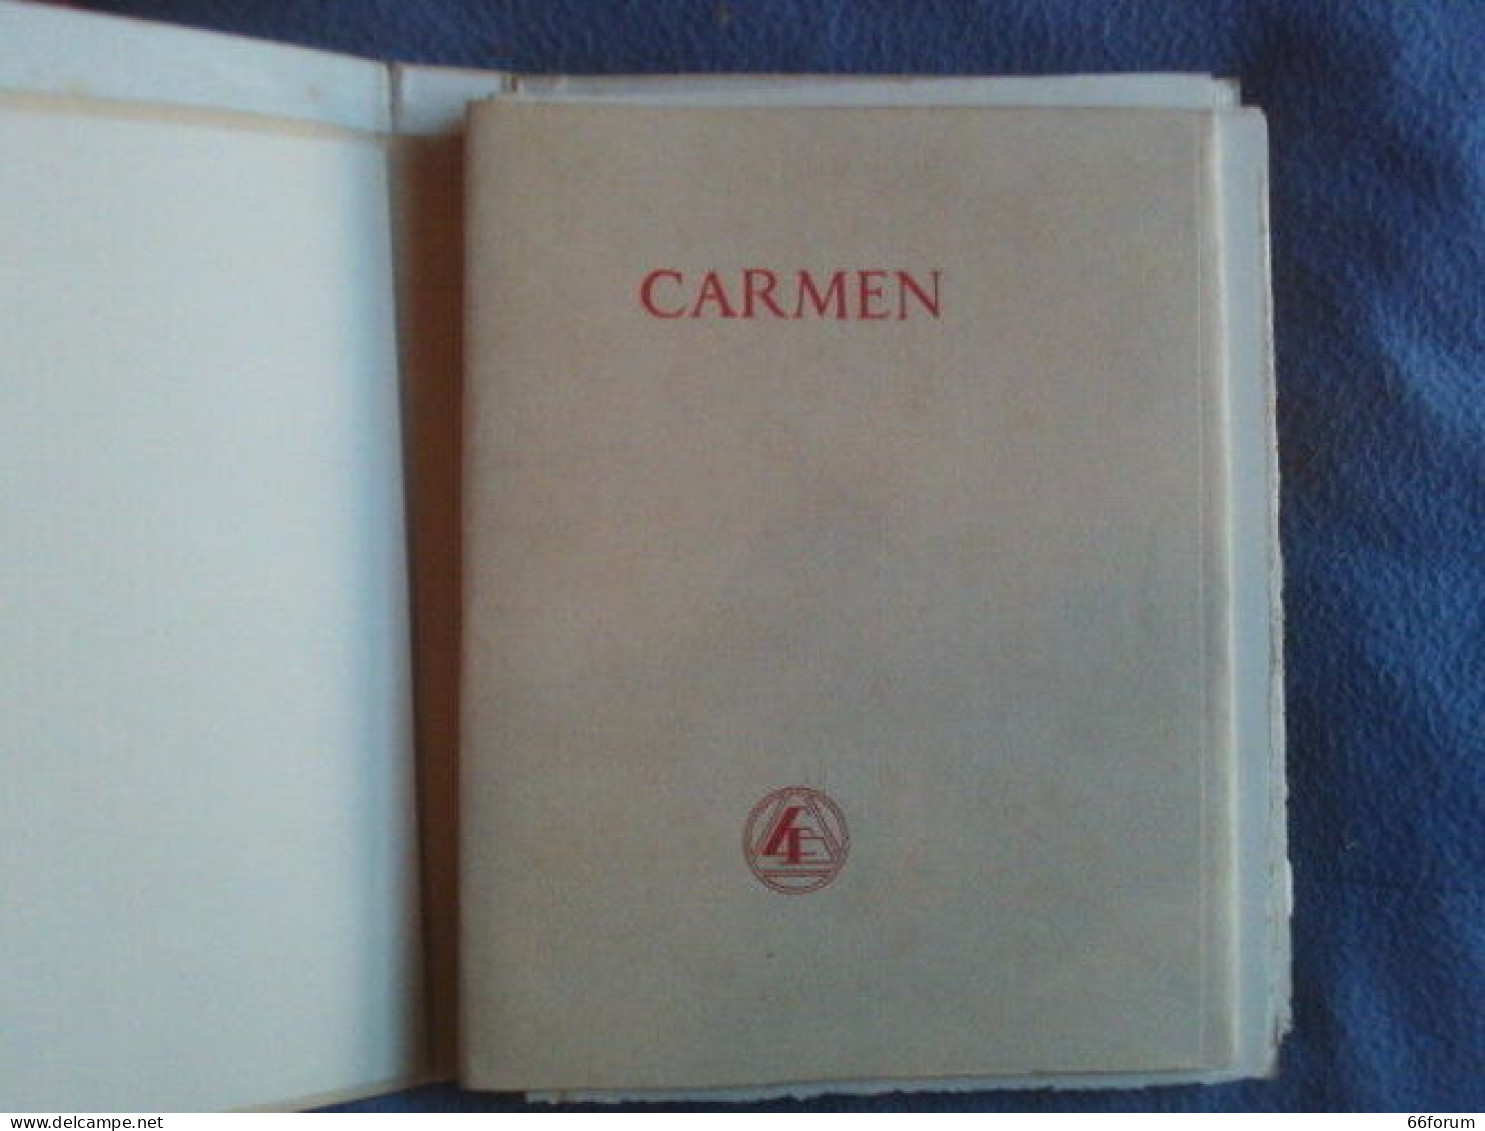 Carmen - Unclassified